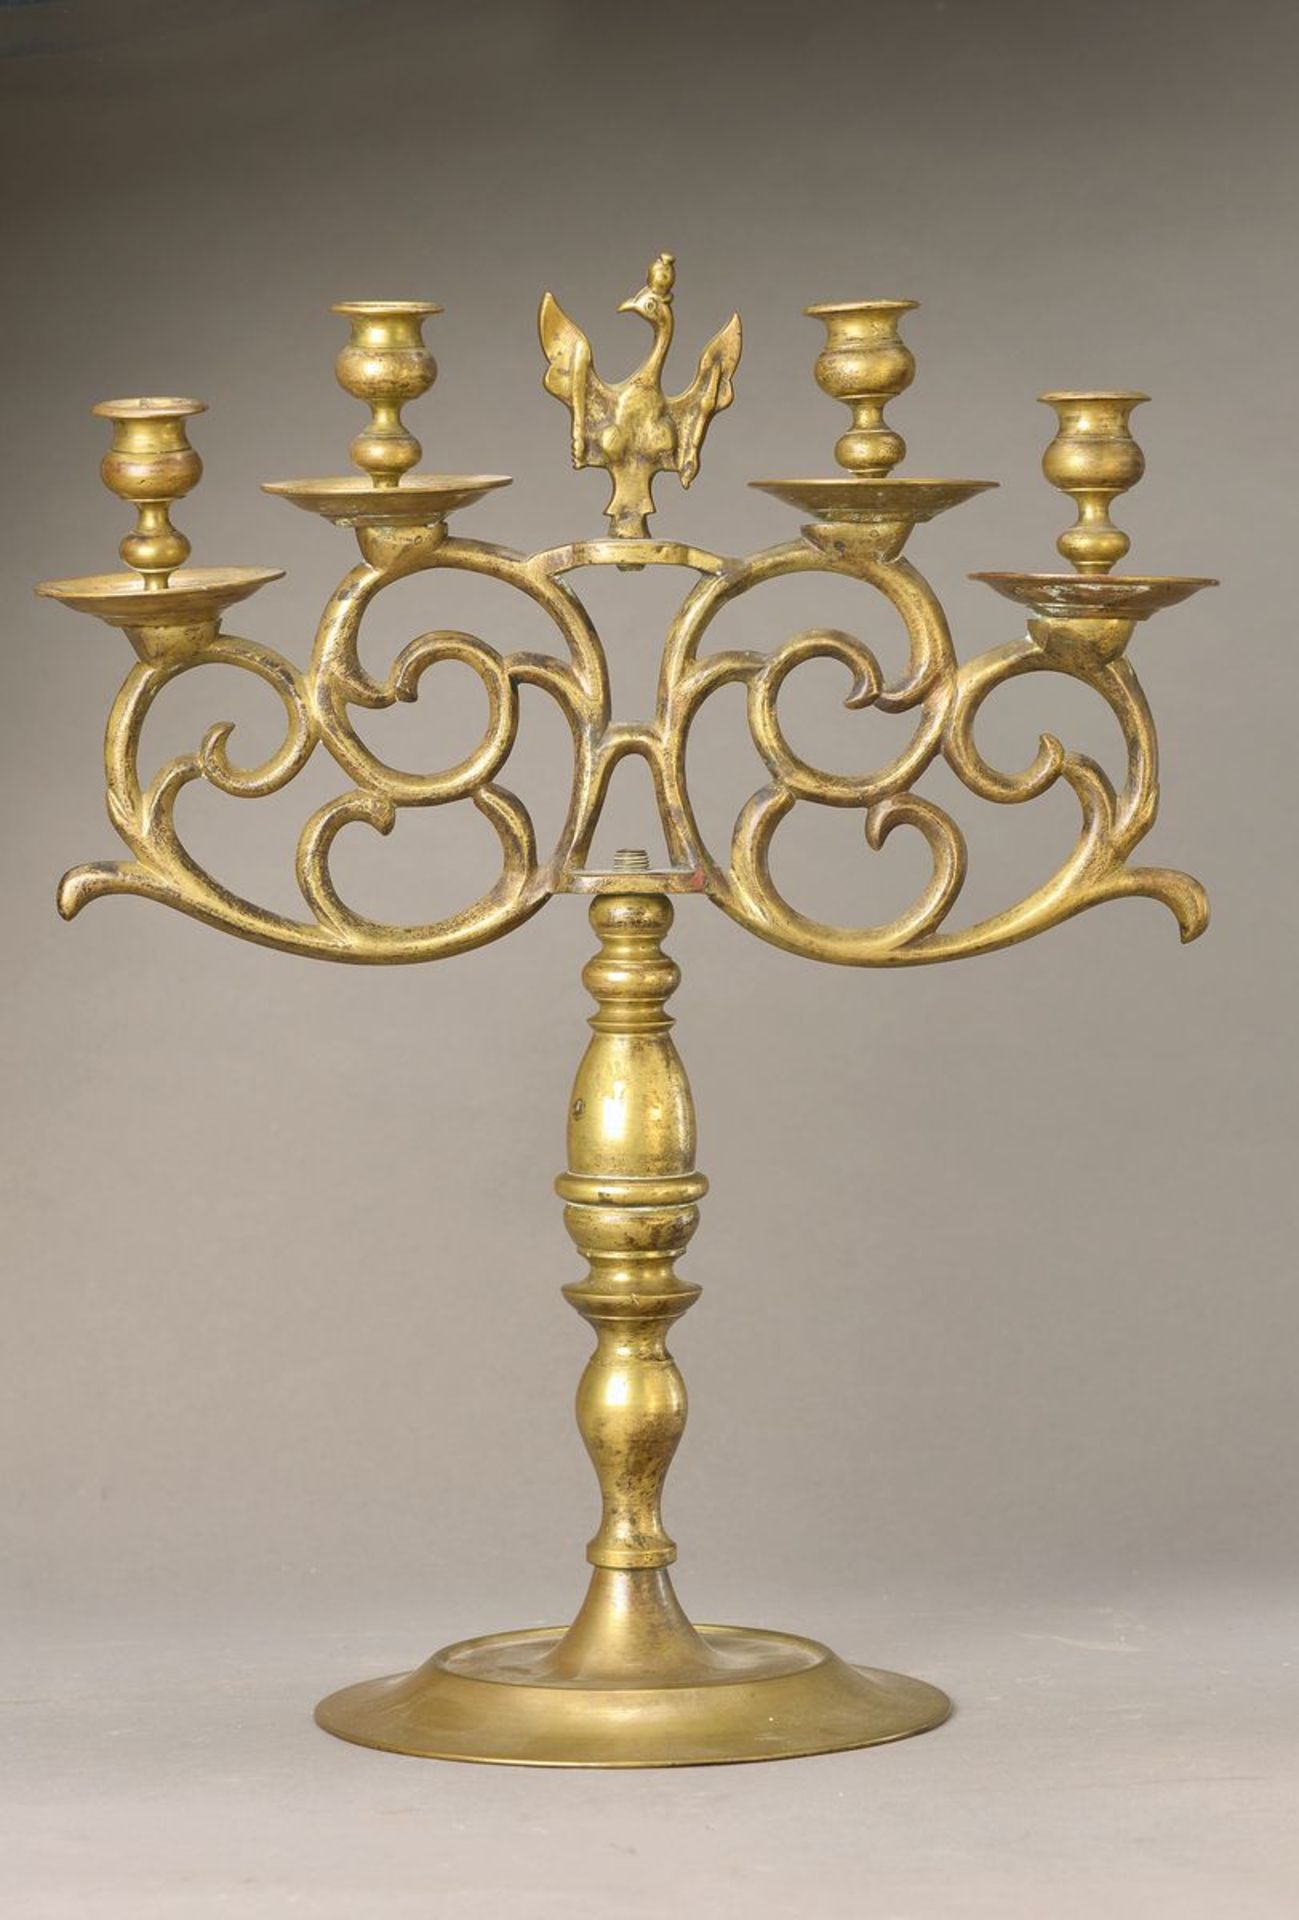 Paar Kerzenleuchter, Preussen, um 1760-70, Messing, vier Brennstellen auf Voluten, mittig - Bild 3 aus 3